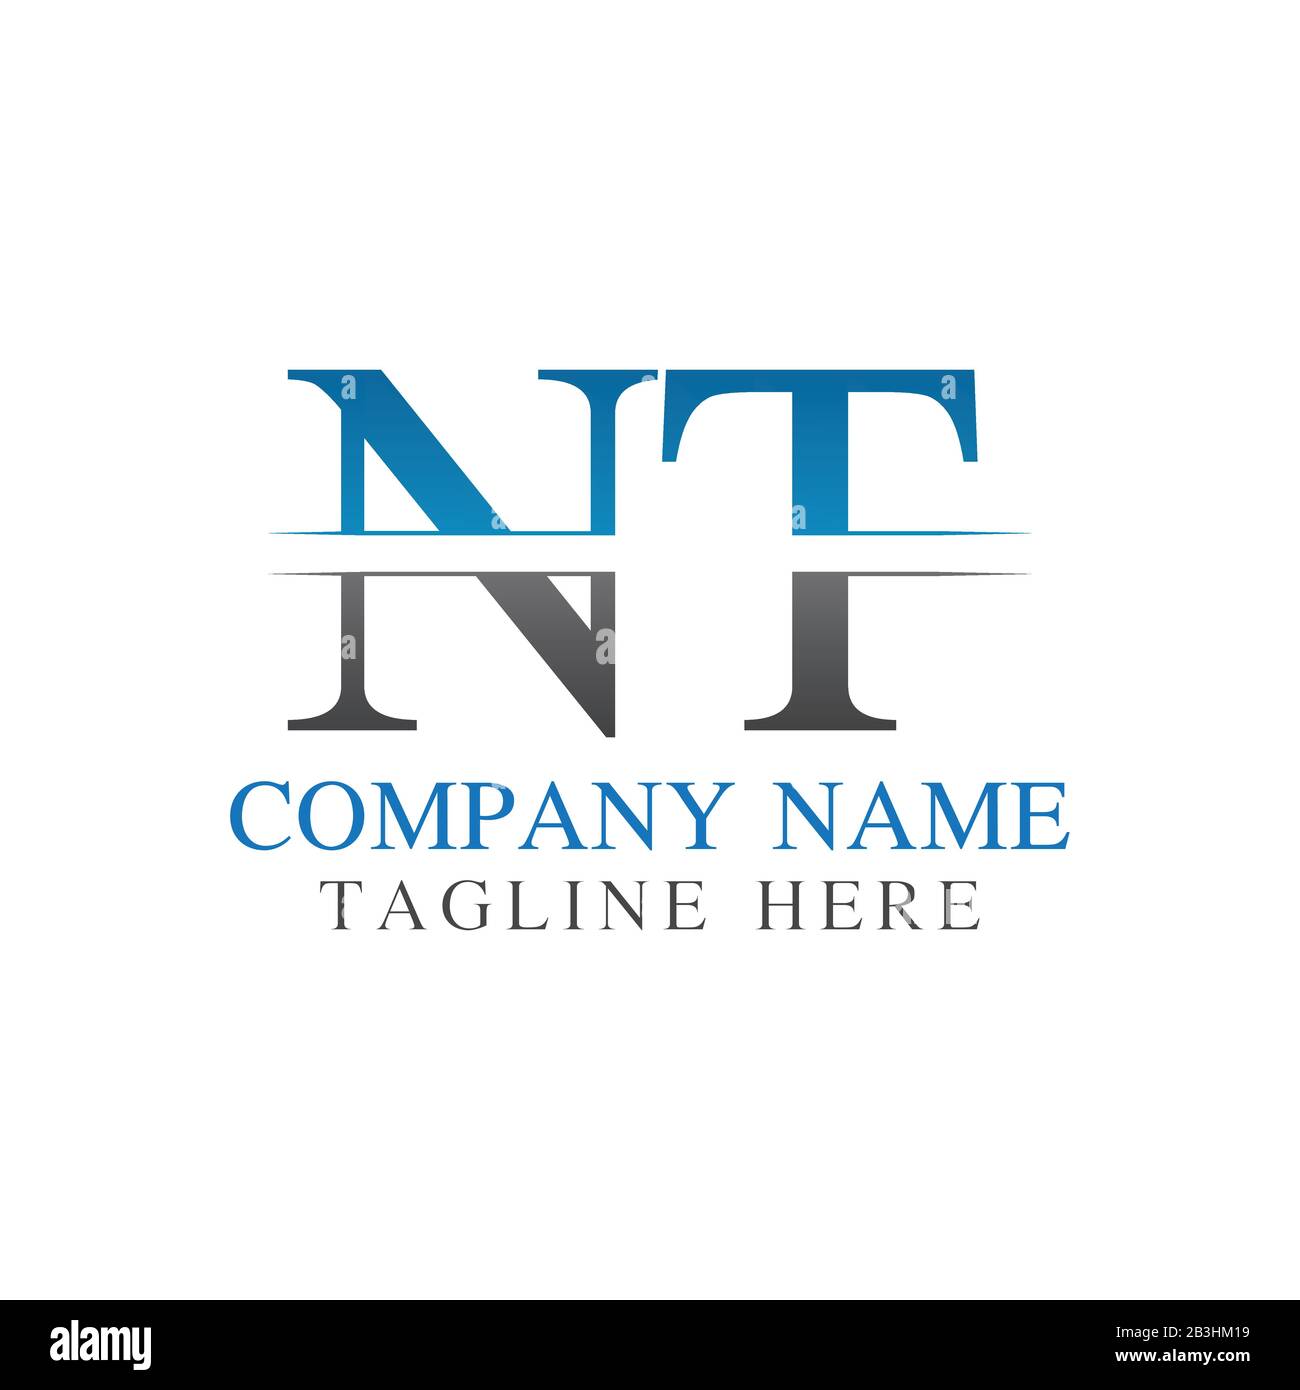 Vektor-Vorlage für das anfängliche Monogramm-Letter-NT-Logo. NT Letter Logo Design Stock Vektor